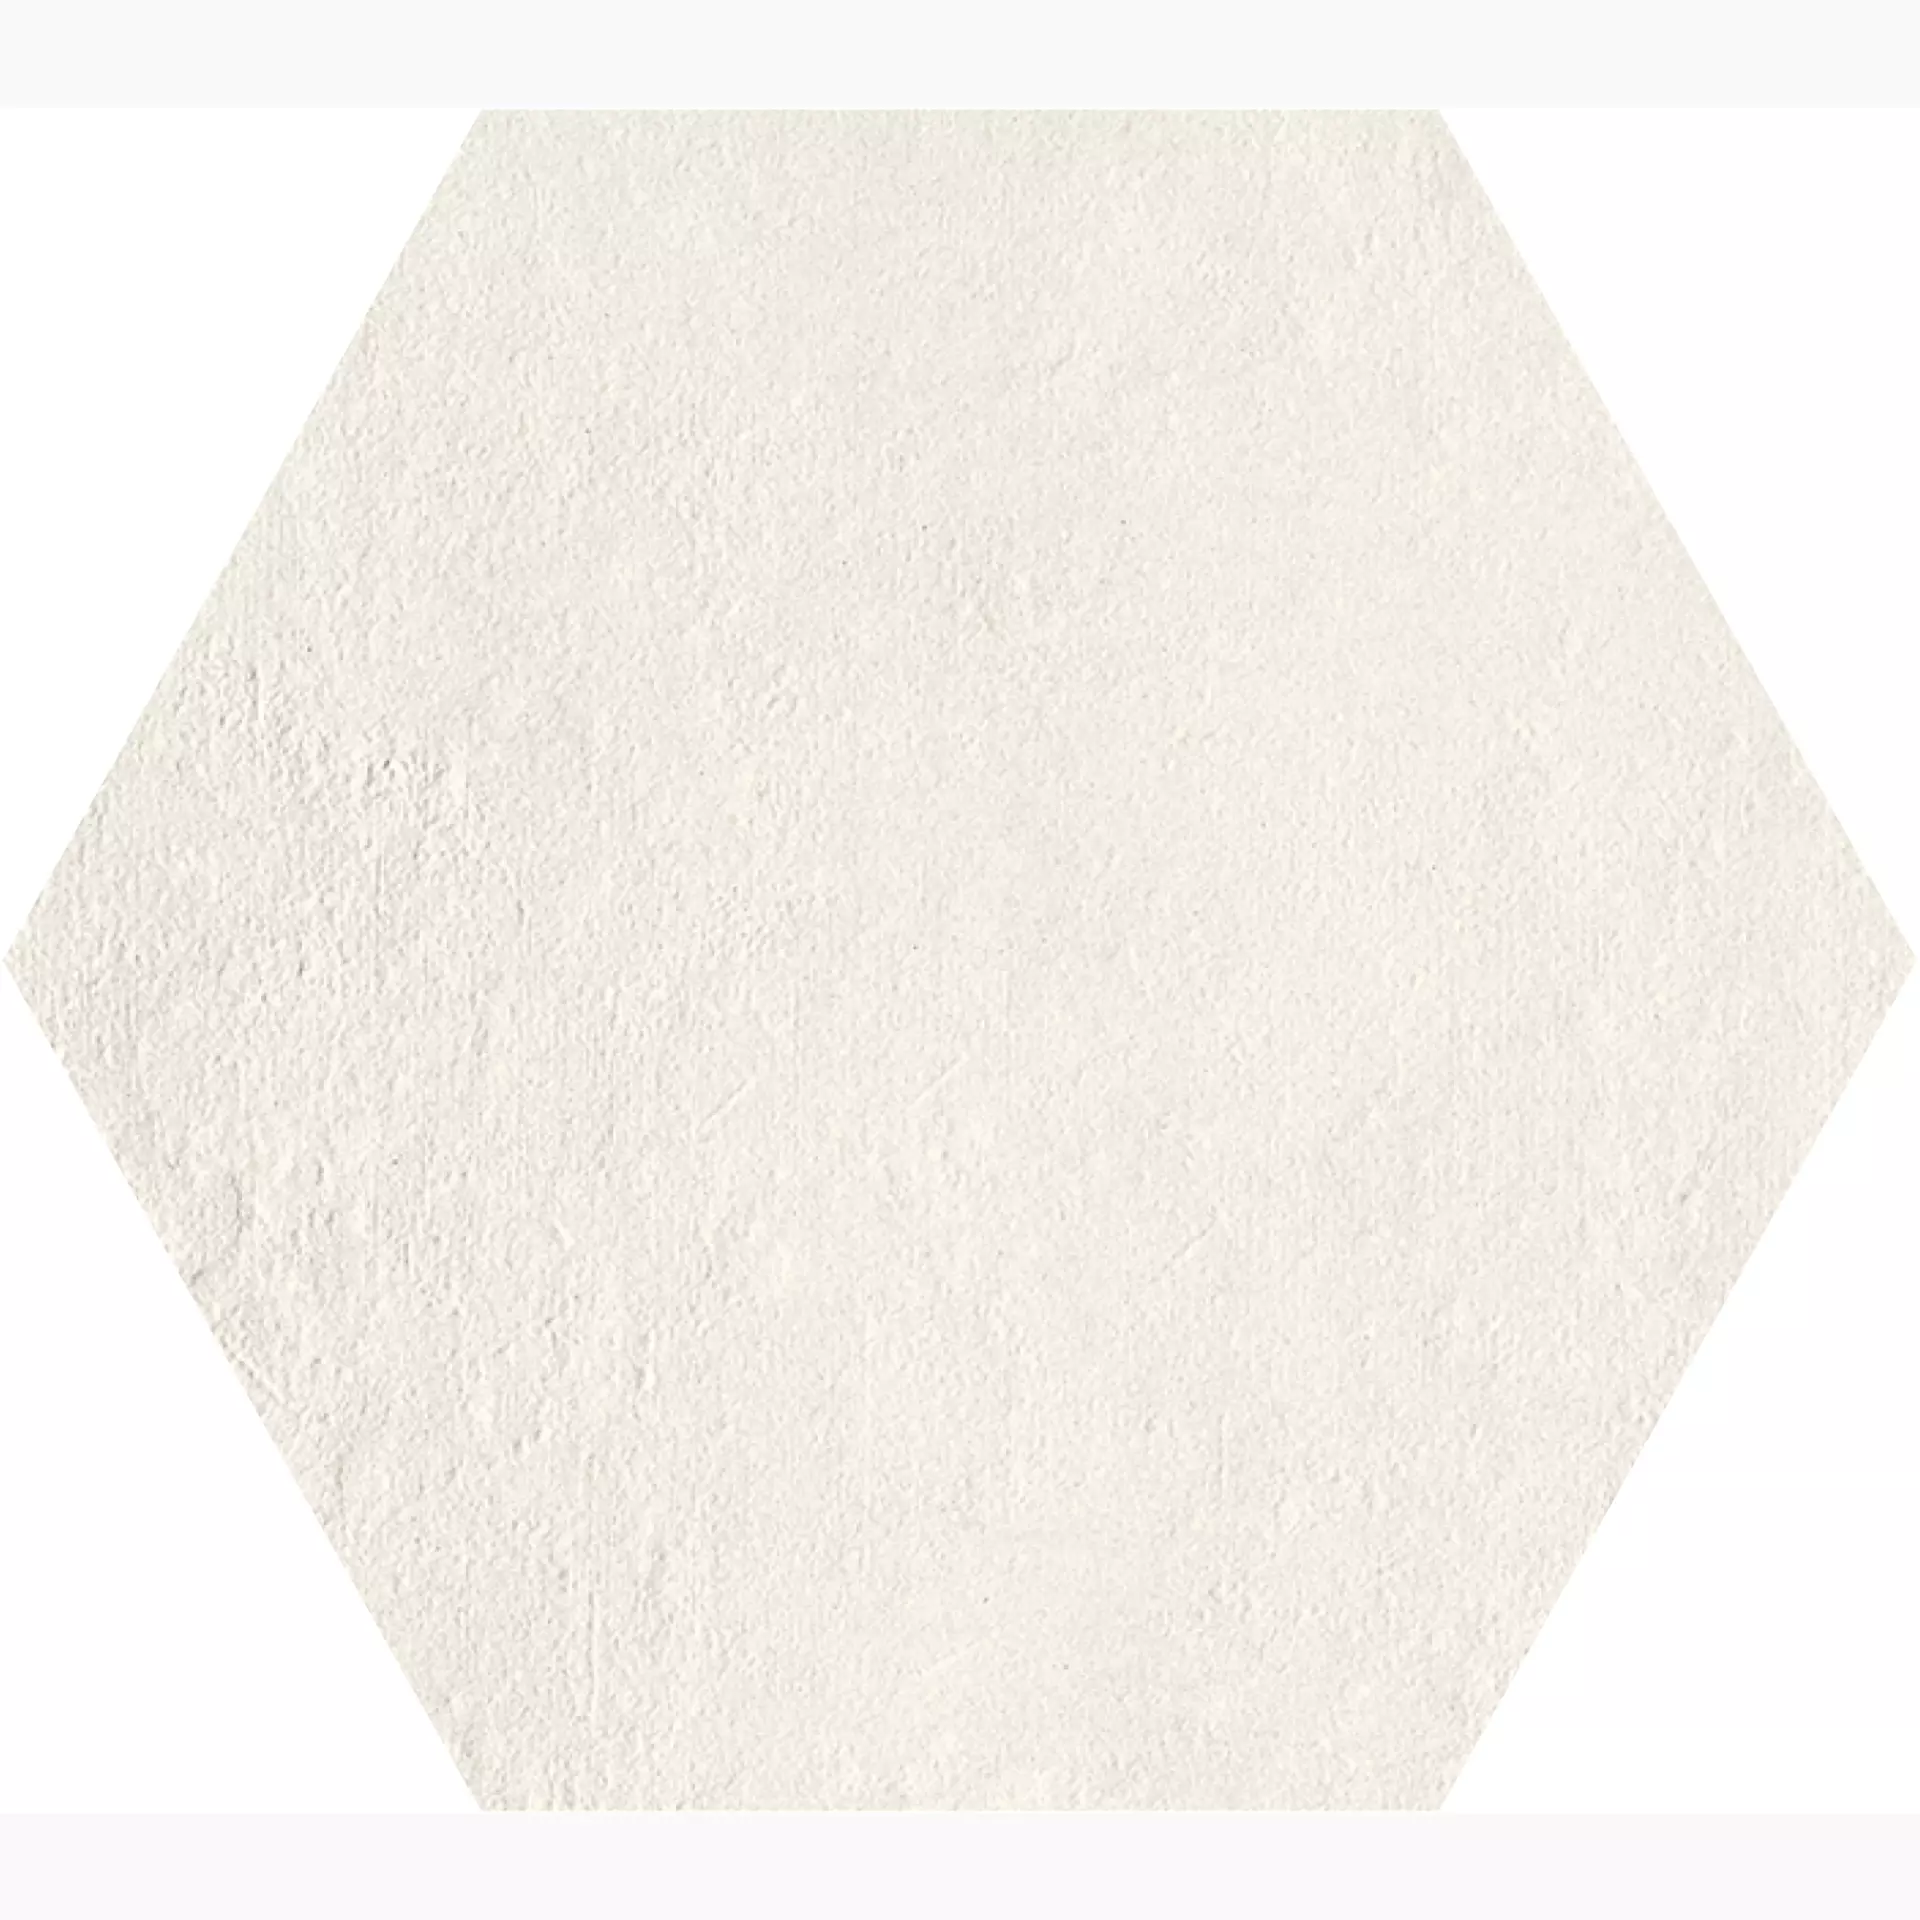 Gigacer Light Bianco Gesso Decor Small Hexagon PO9ESAGESSO 16x18cm 6mm